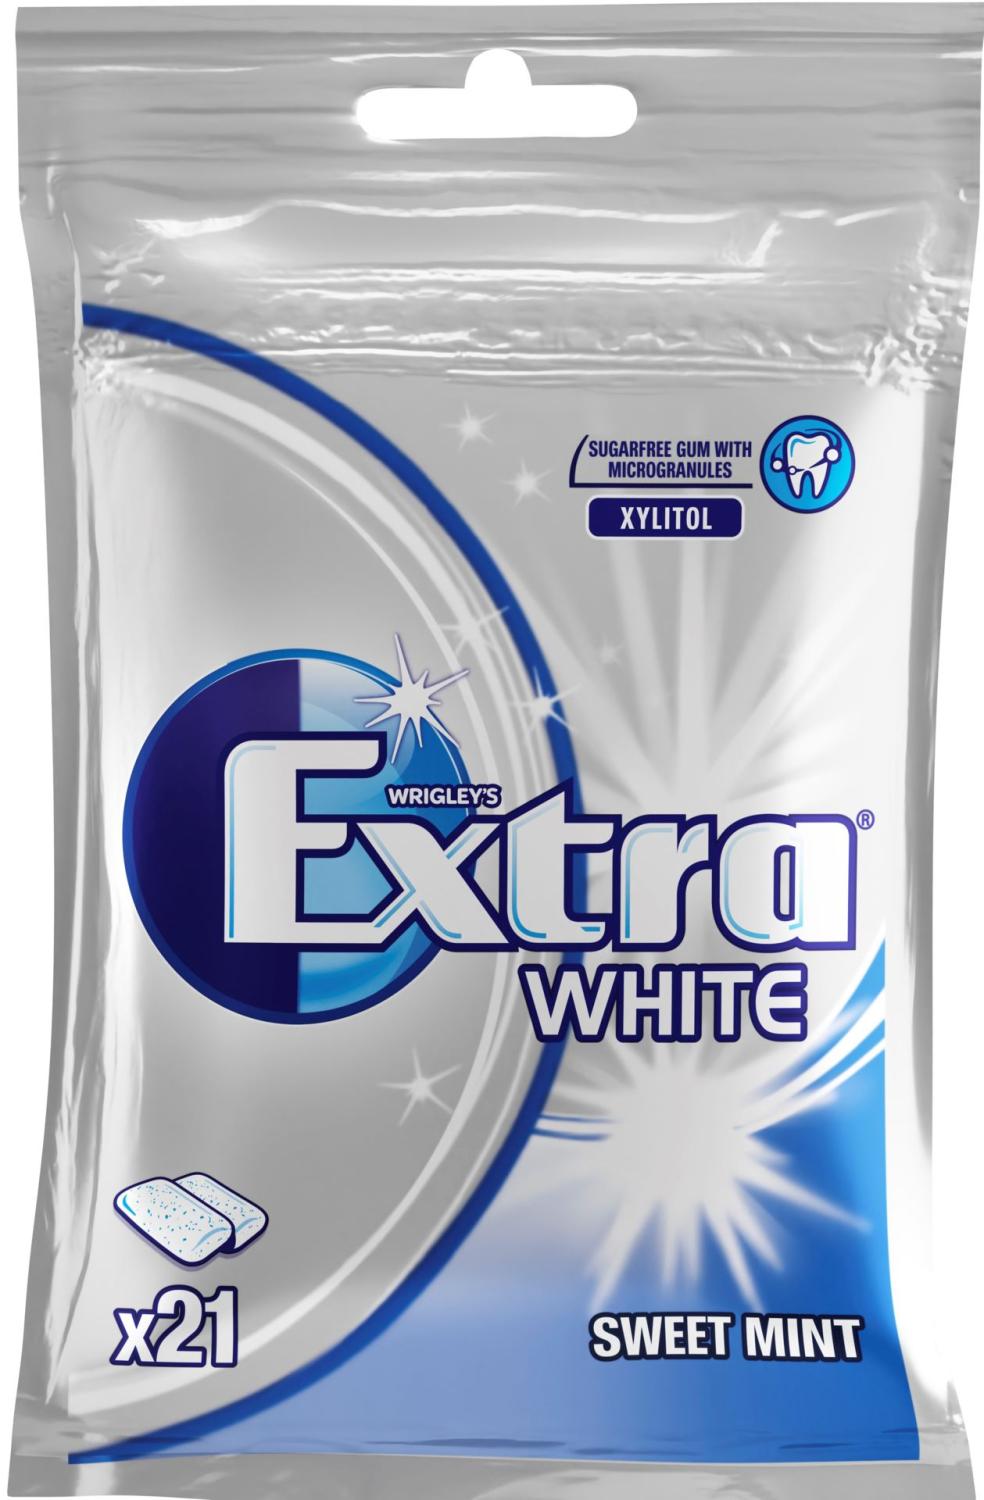 Extra White "Spearmint" 30-p